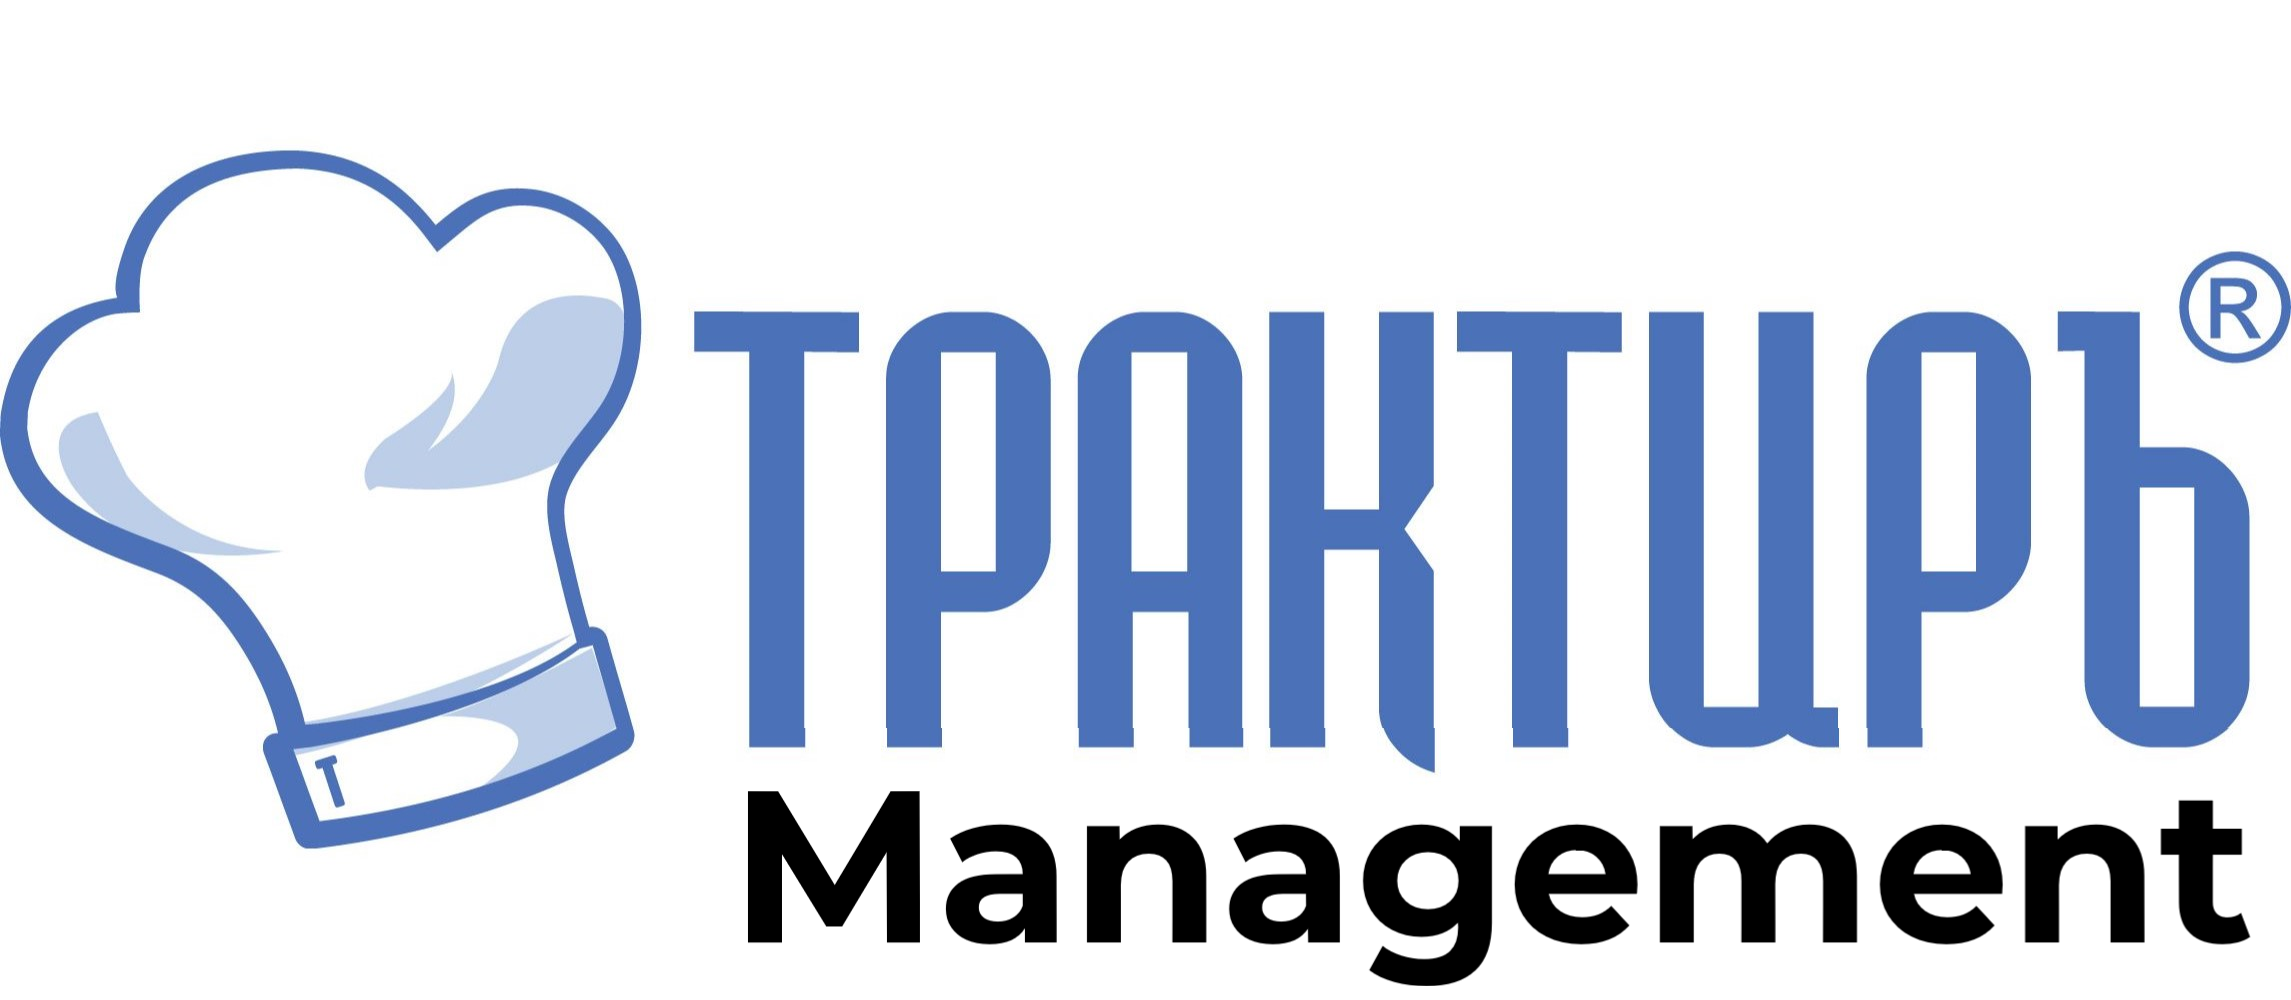 Трактиръ: Management в Хабаровске